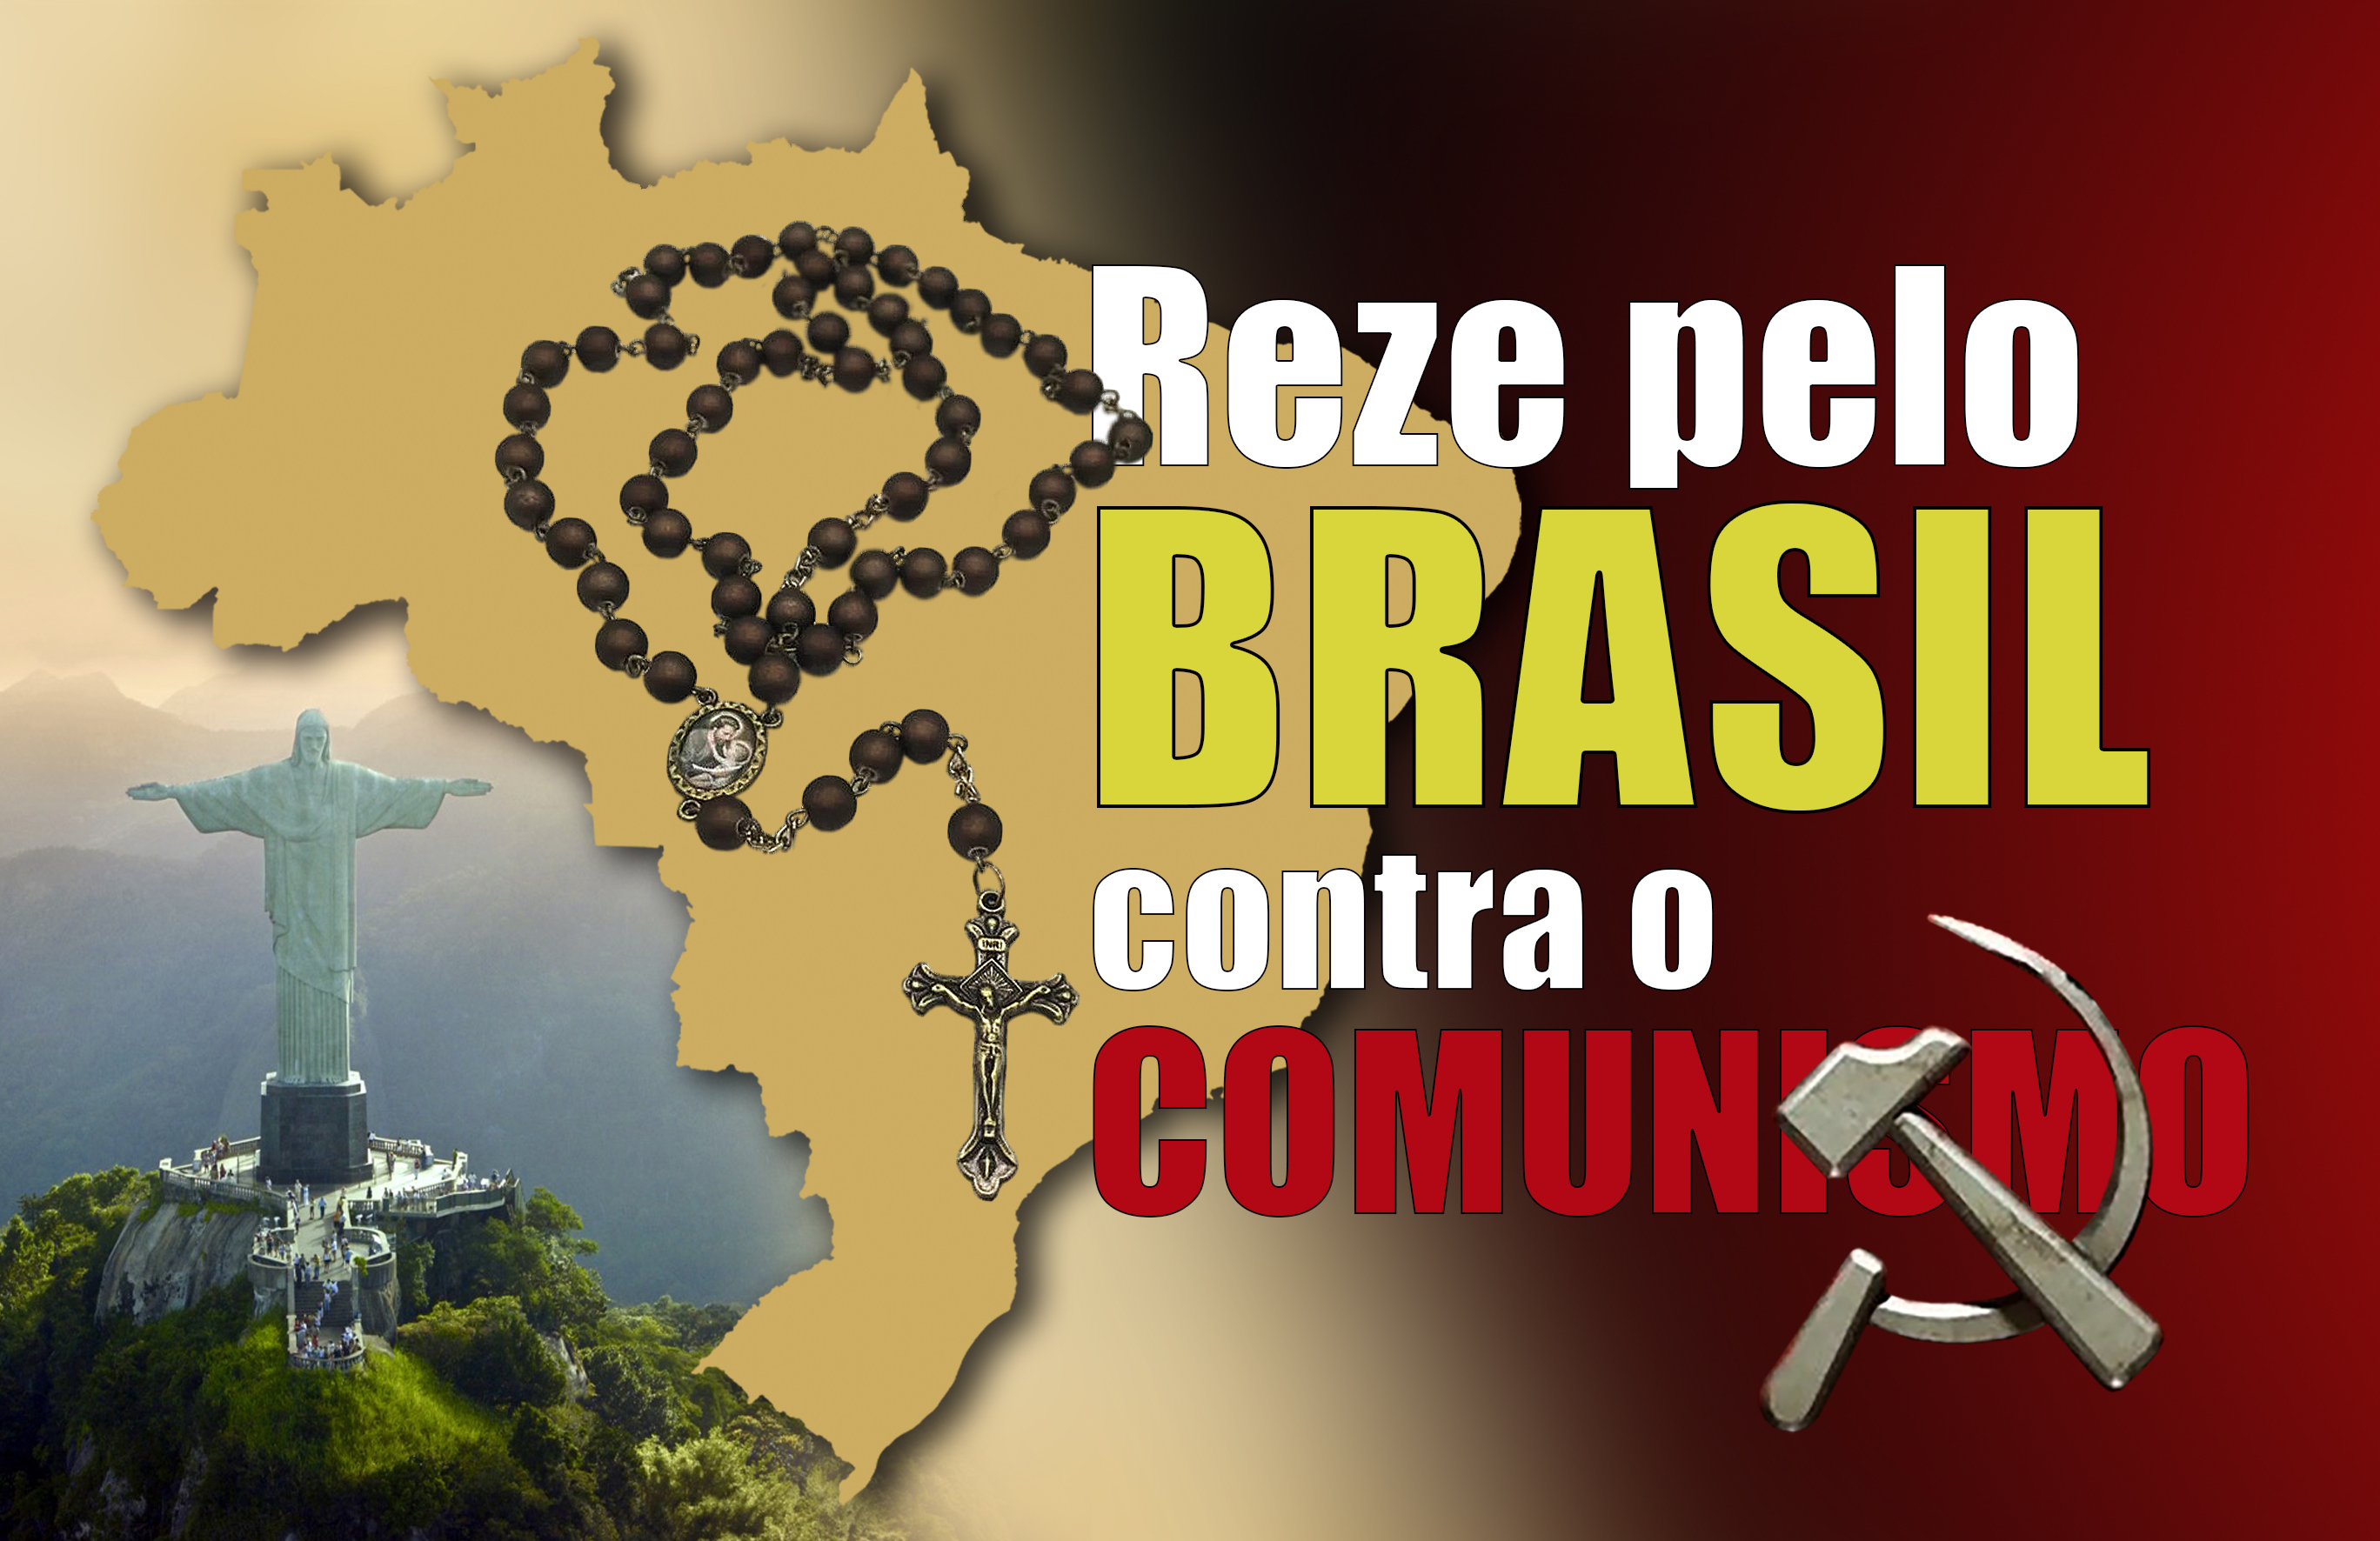 Reze pelo Brasil contra o comunismo